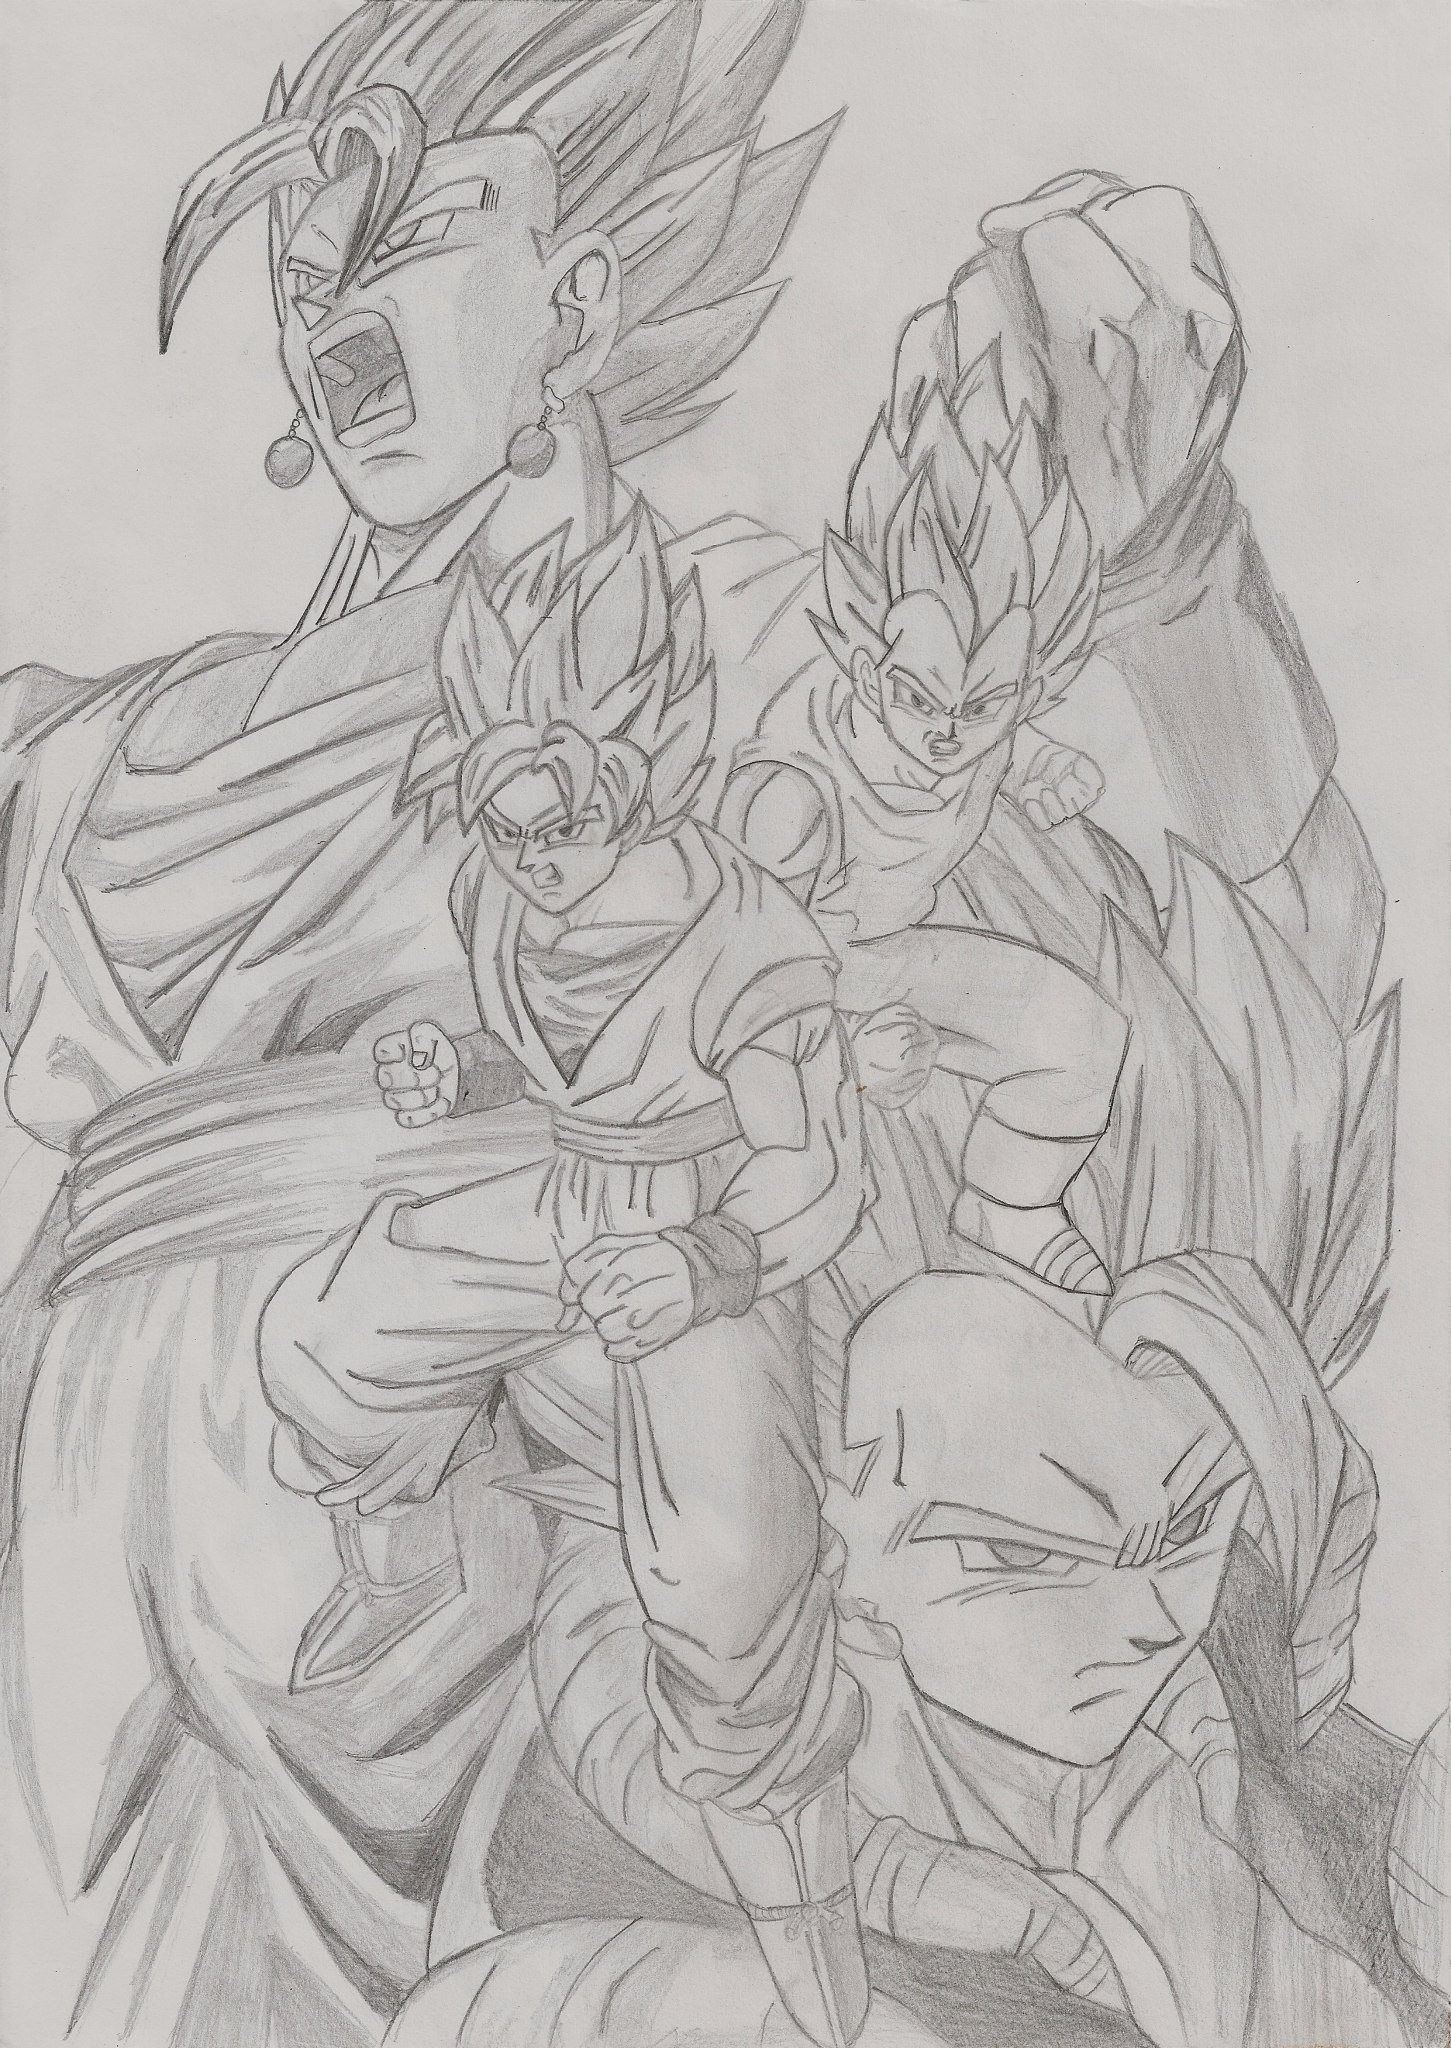 Goku And Vegeta Drawing At Getdrawings - Vegeta Super Saiyan